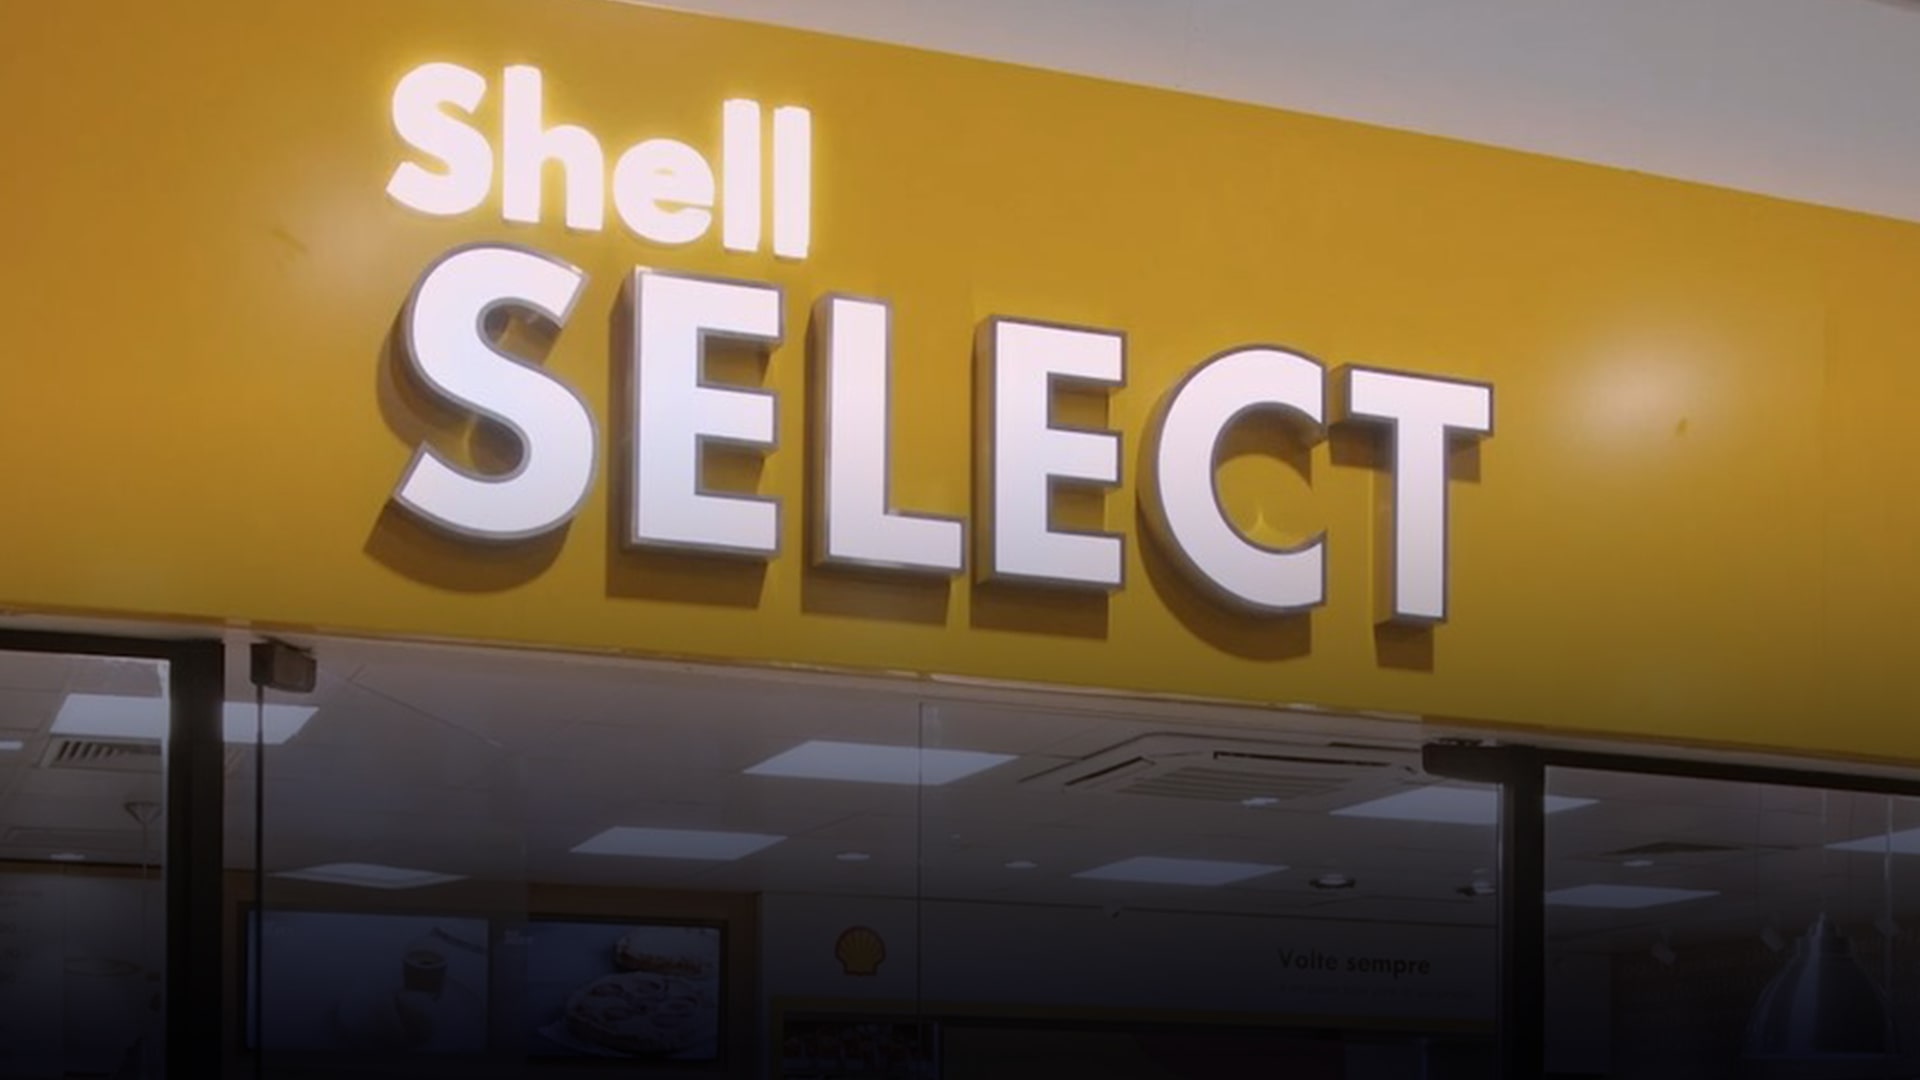 Shell Select – Momento coisa boa